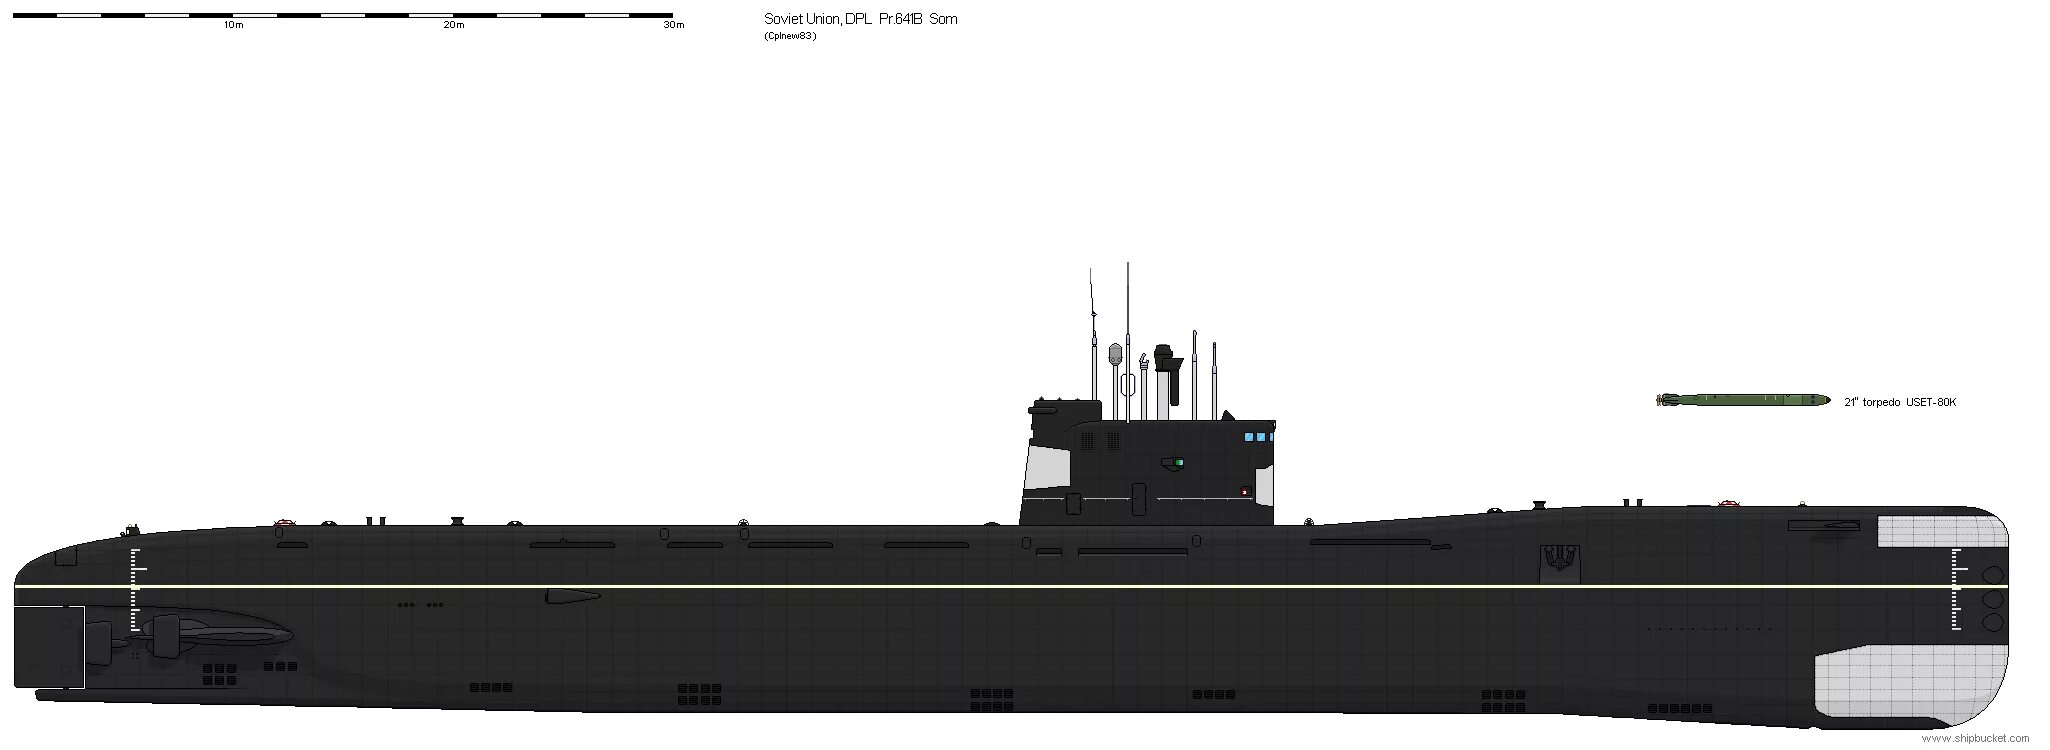 641б подводная лодка. Дизельная подводная лодка 641 Буки. Подводная лодка сом 641б. Подводная лодка проекта 641 Фокстрот. Пл чо шп онаж